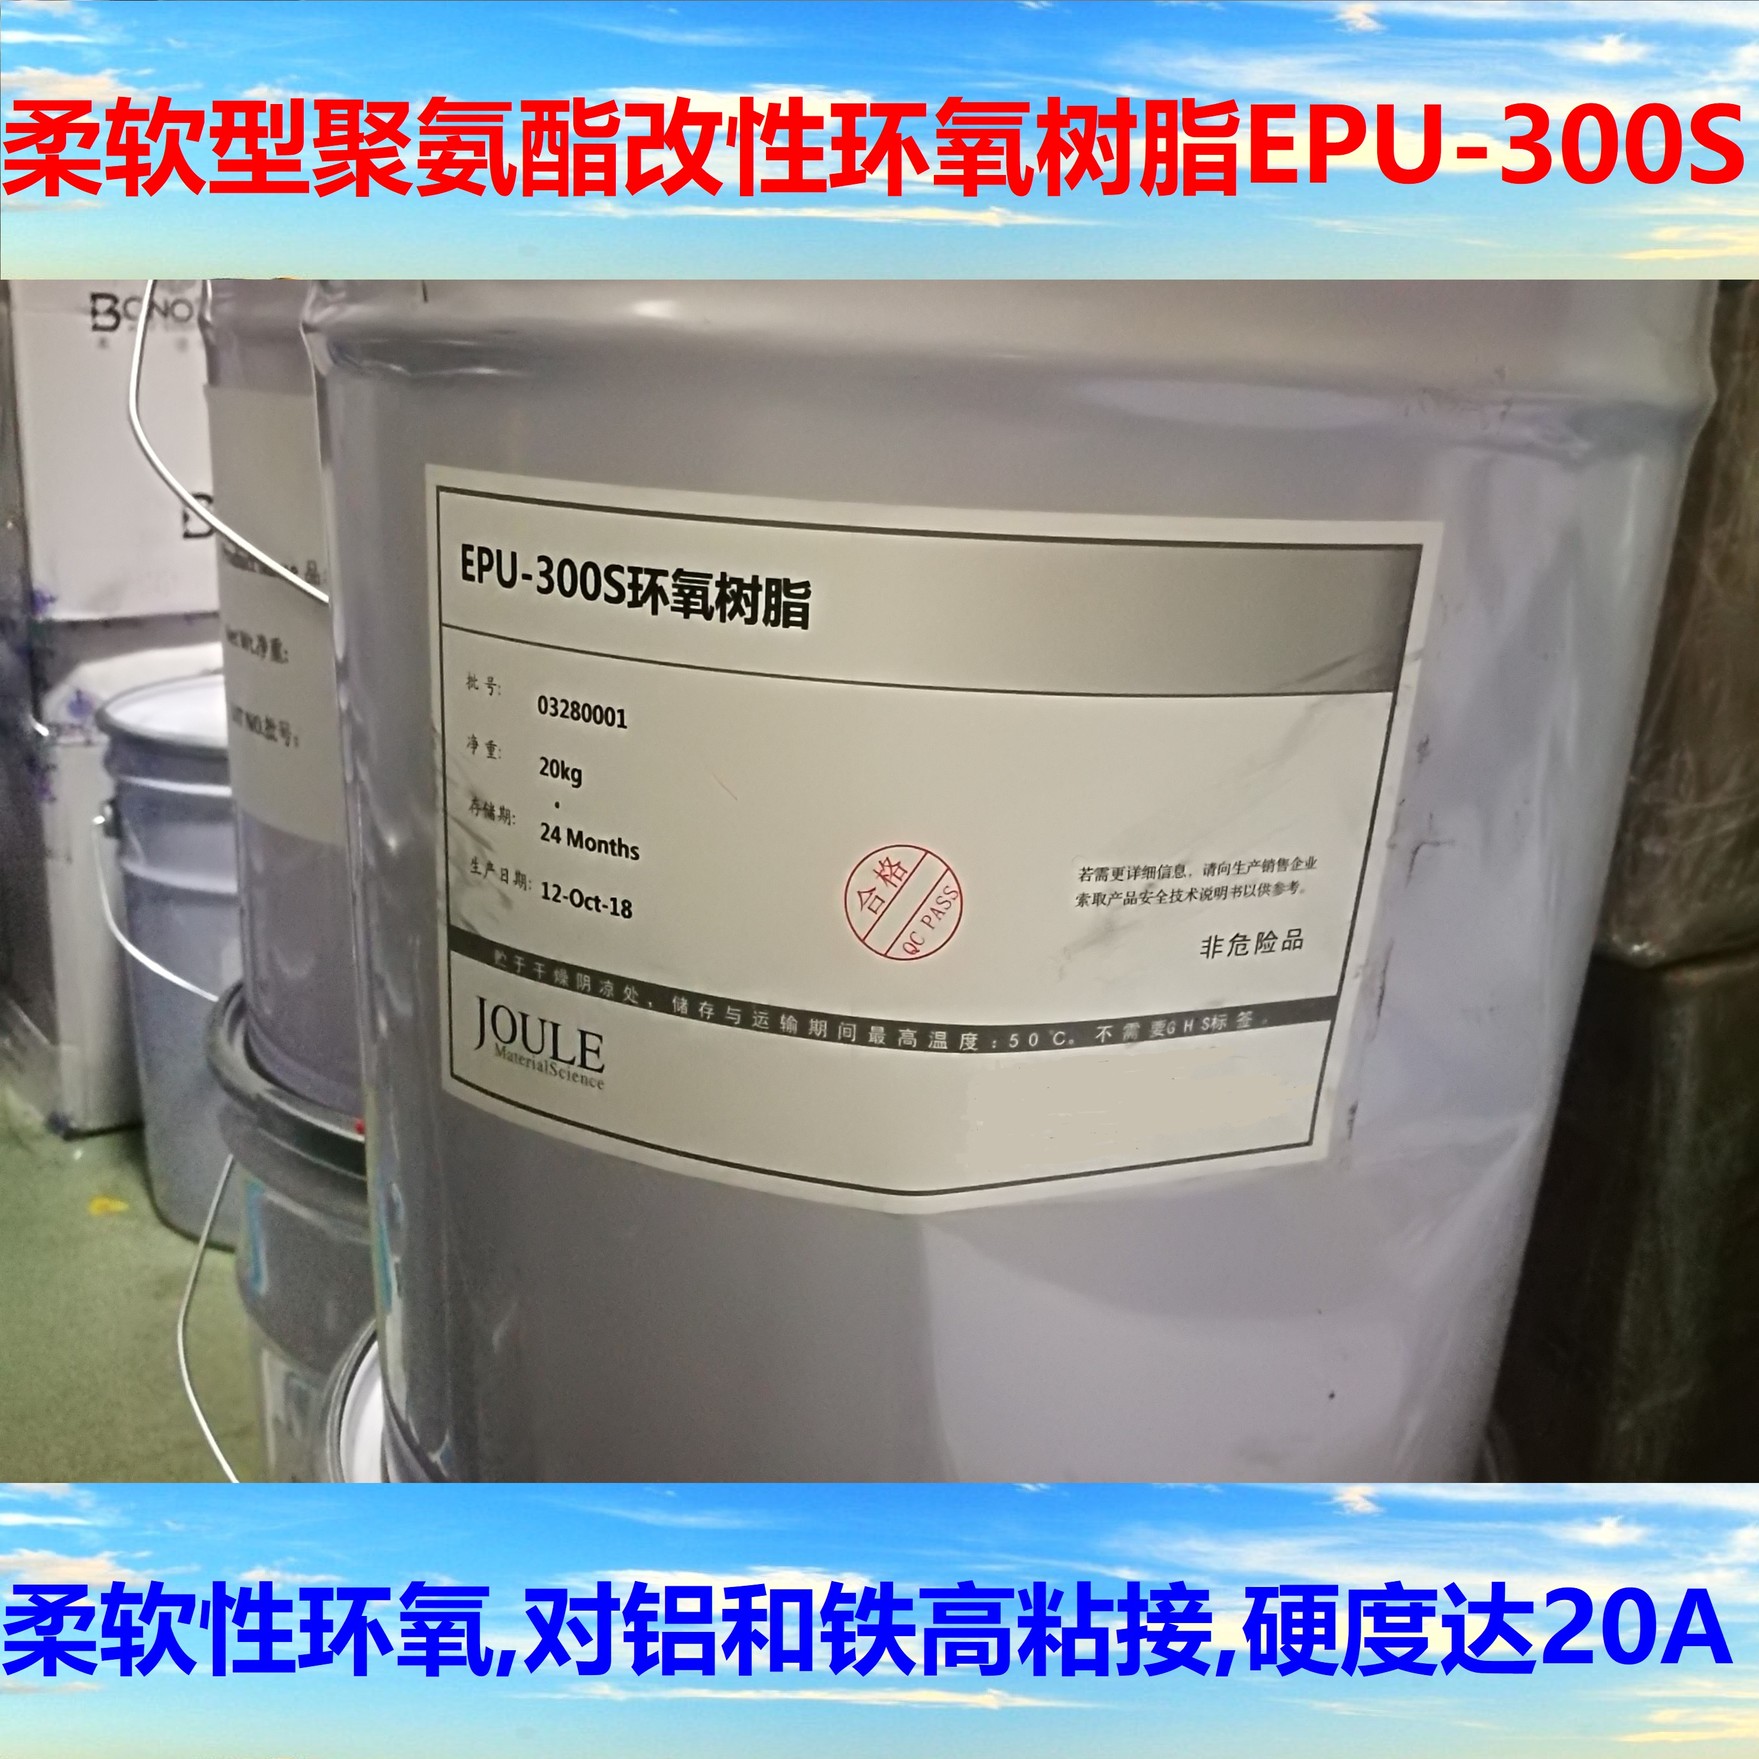 柔软型聚氨酯改性环氧树脂EPU-300S 对铝和铁高粘接 硬度可达20A图片